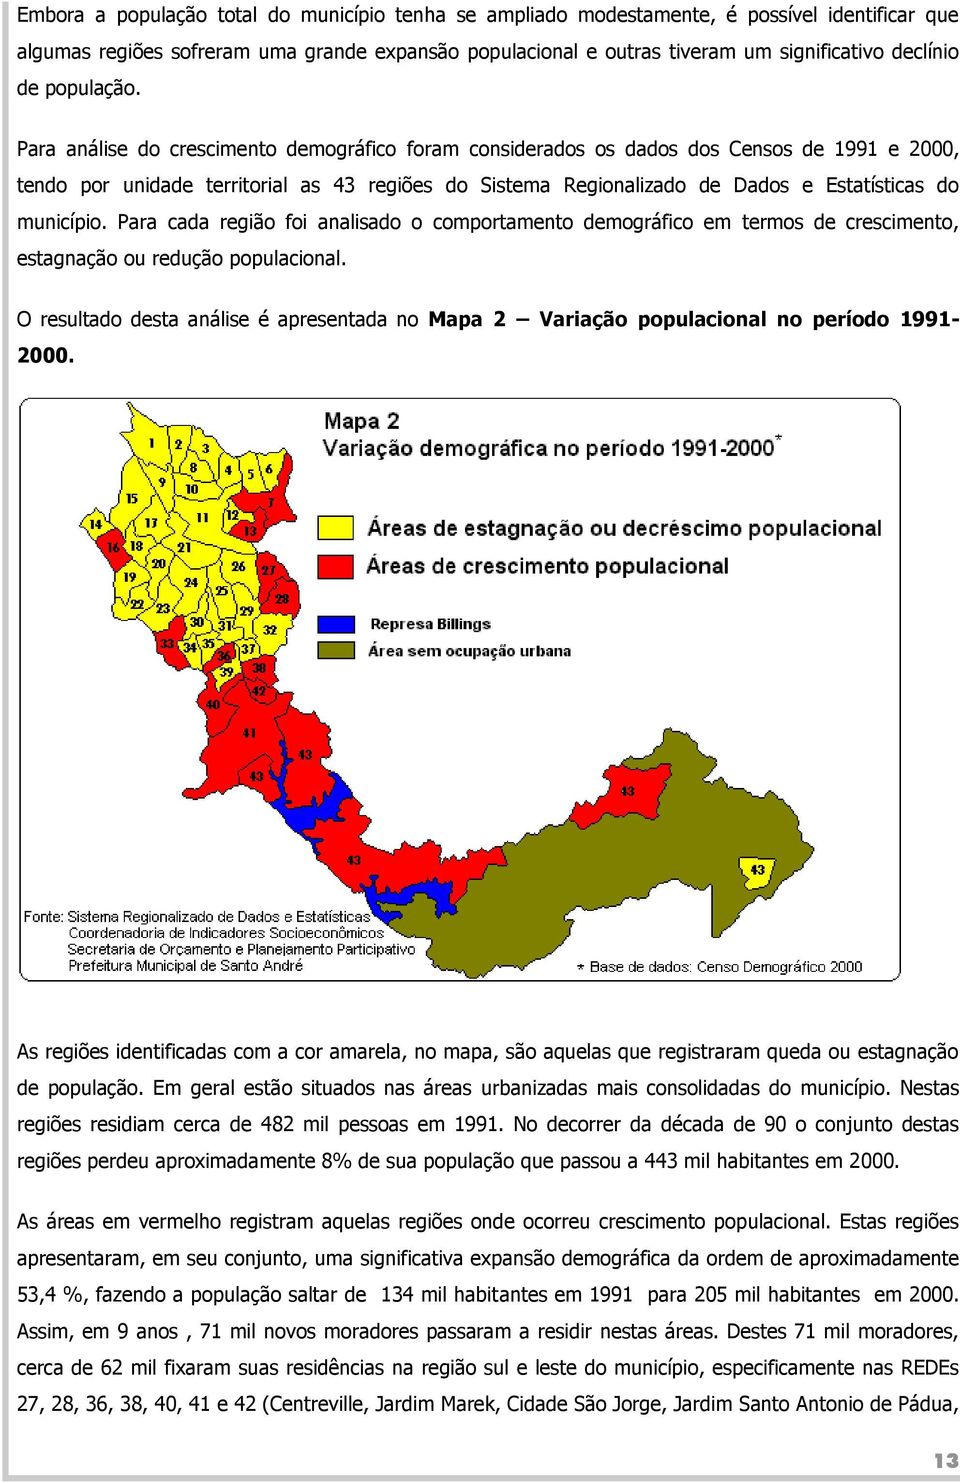 Para análise do crescimento demográfico foram considerados os dados dos Censos de 1991 e 2000, tendo por unidade territorial as 43 regiões do Sistema Regionalizado de Dados e Estatísticas do